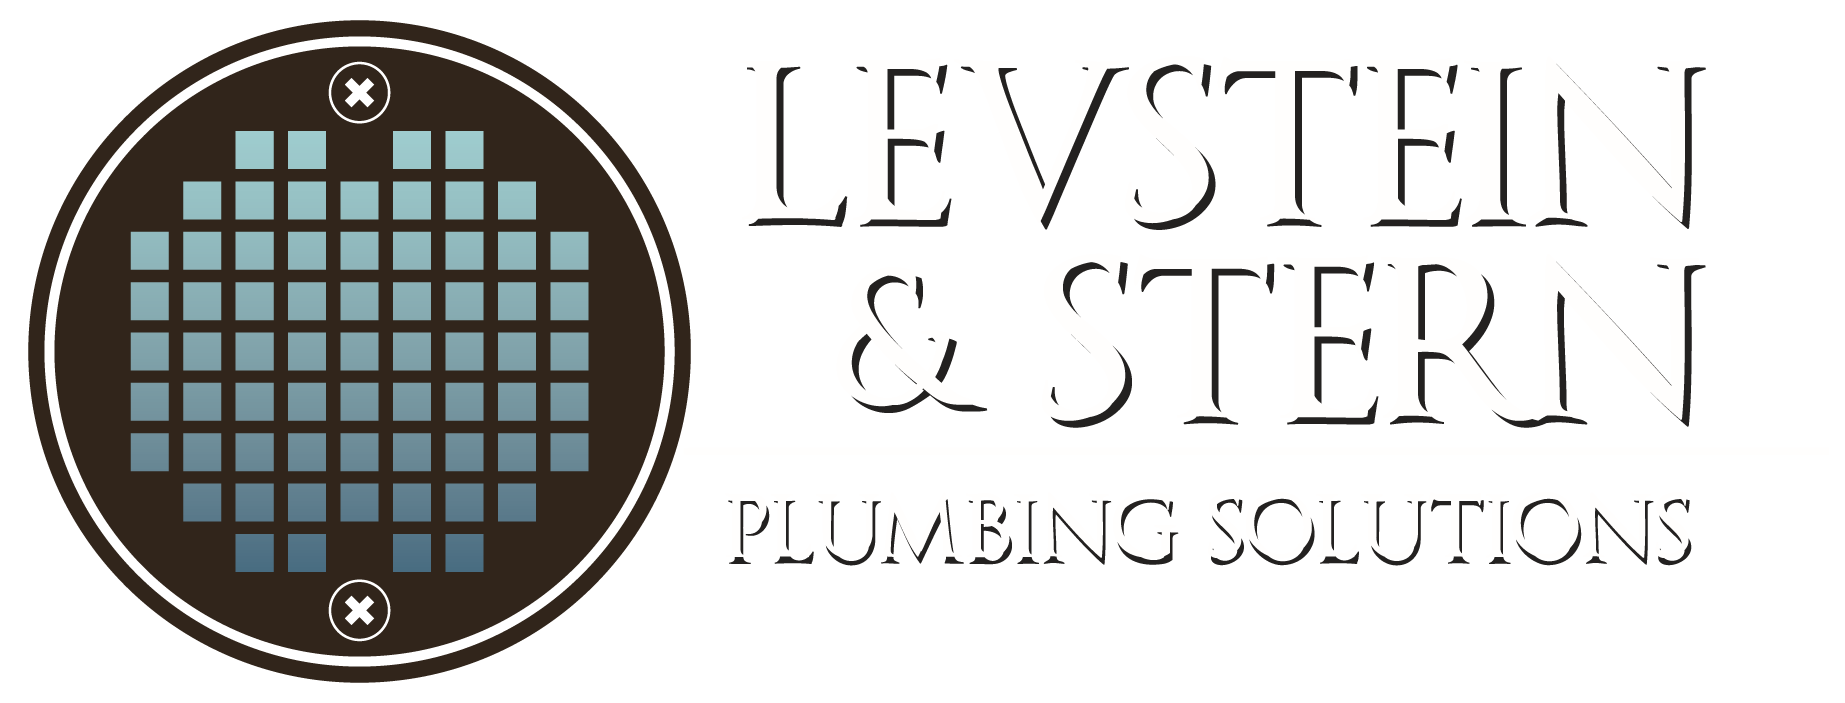 Levstein & Stern Plumbing Ltd